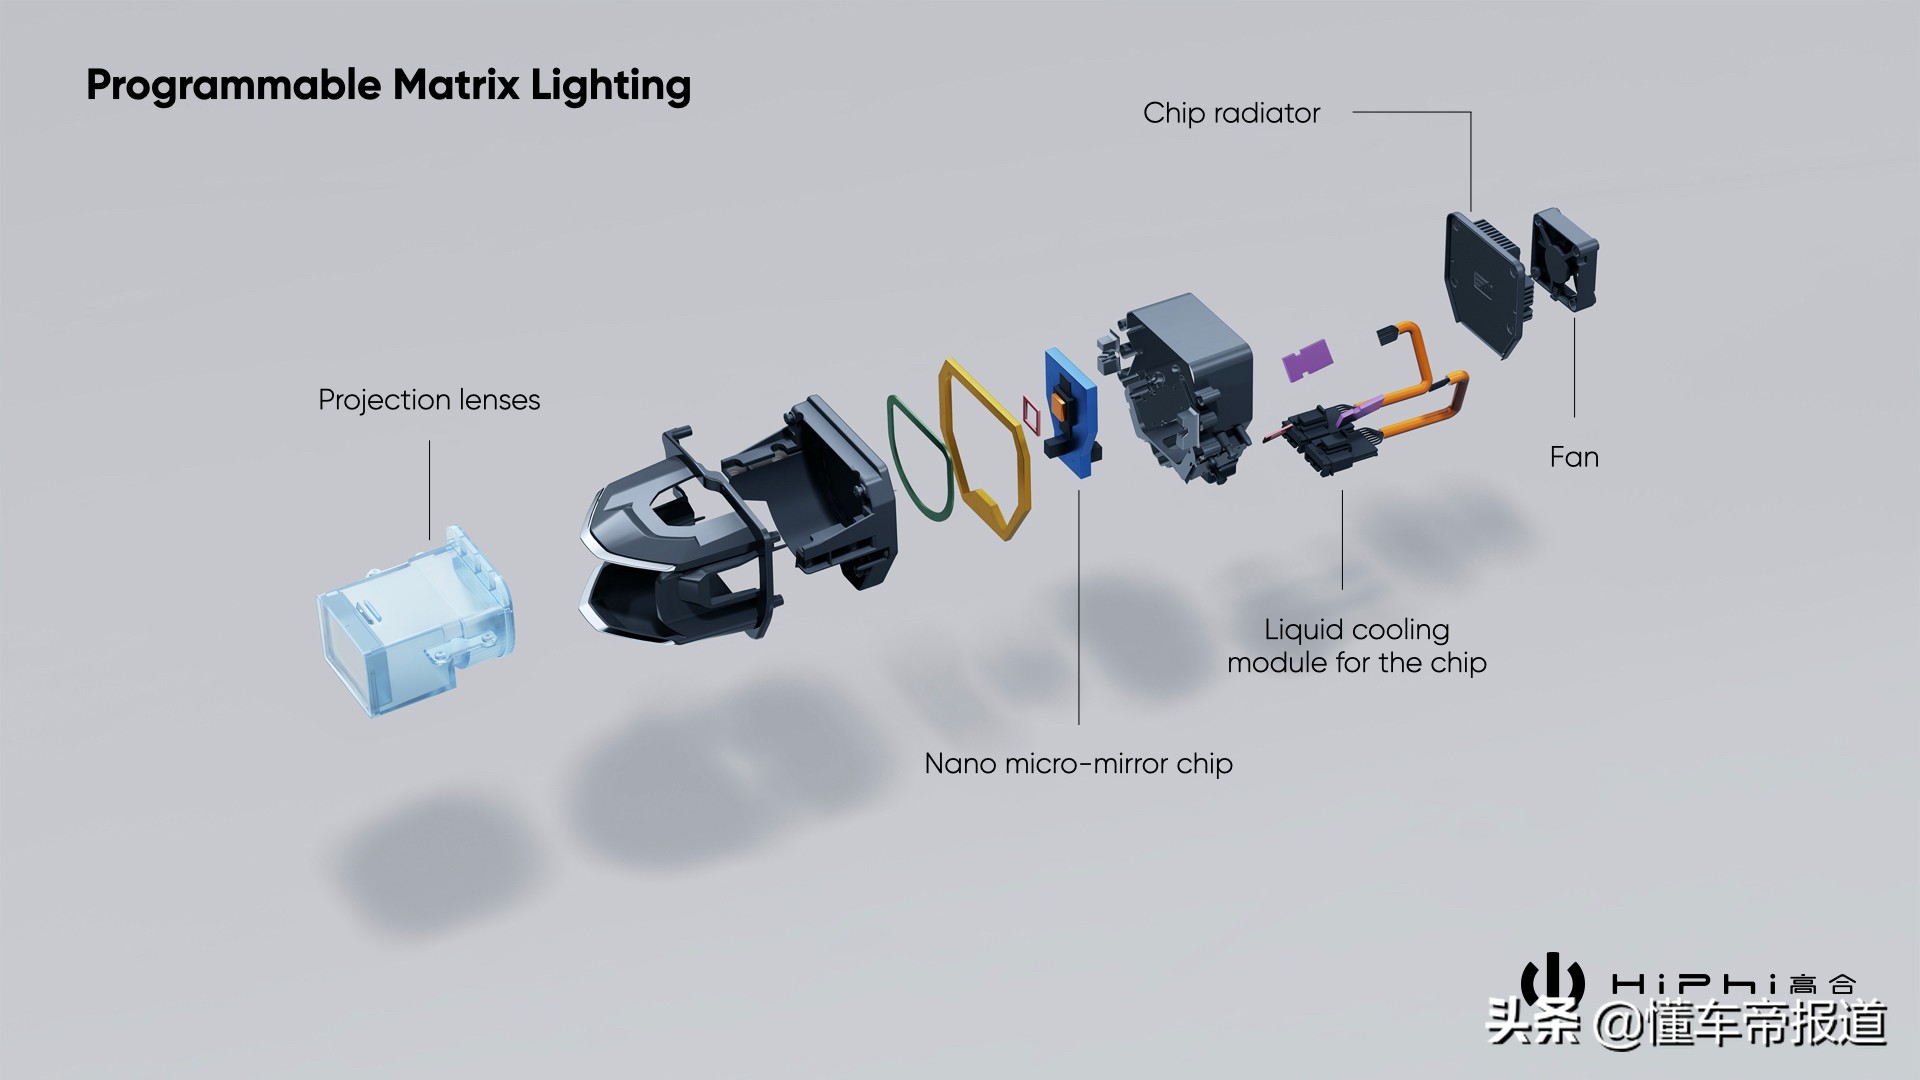 曝光 | 高合HiPhi X发布可进化自定义数字灯光系统